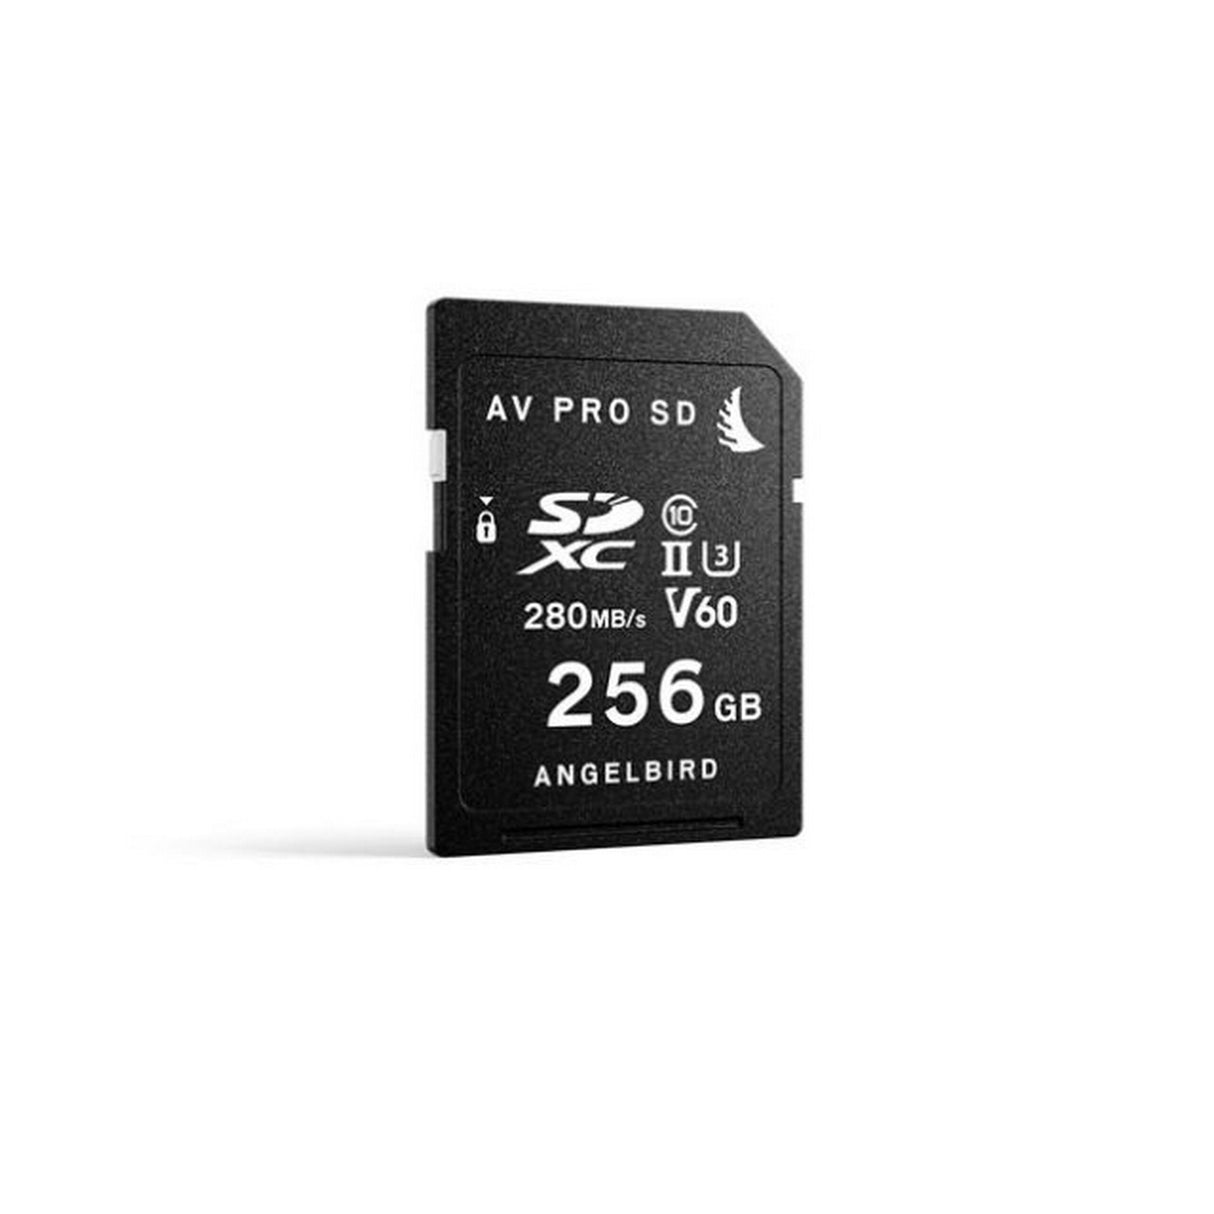 Angelbird AVP256SDMK2V60 AVpro SD MK2 256GB V60 Memory Card